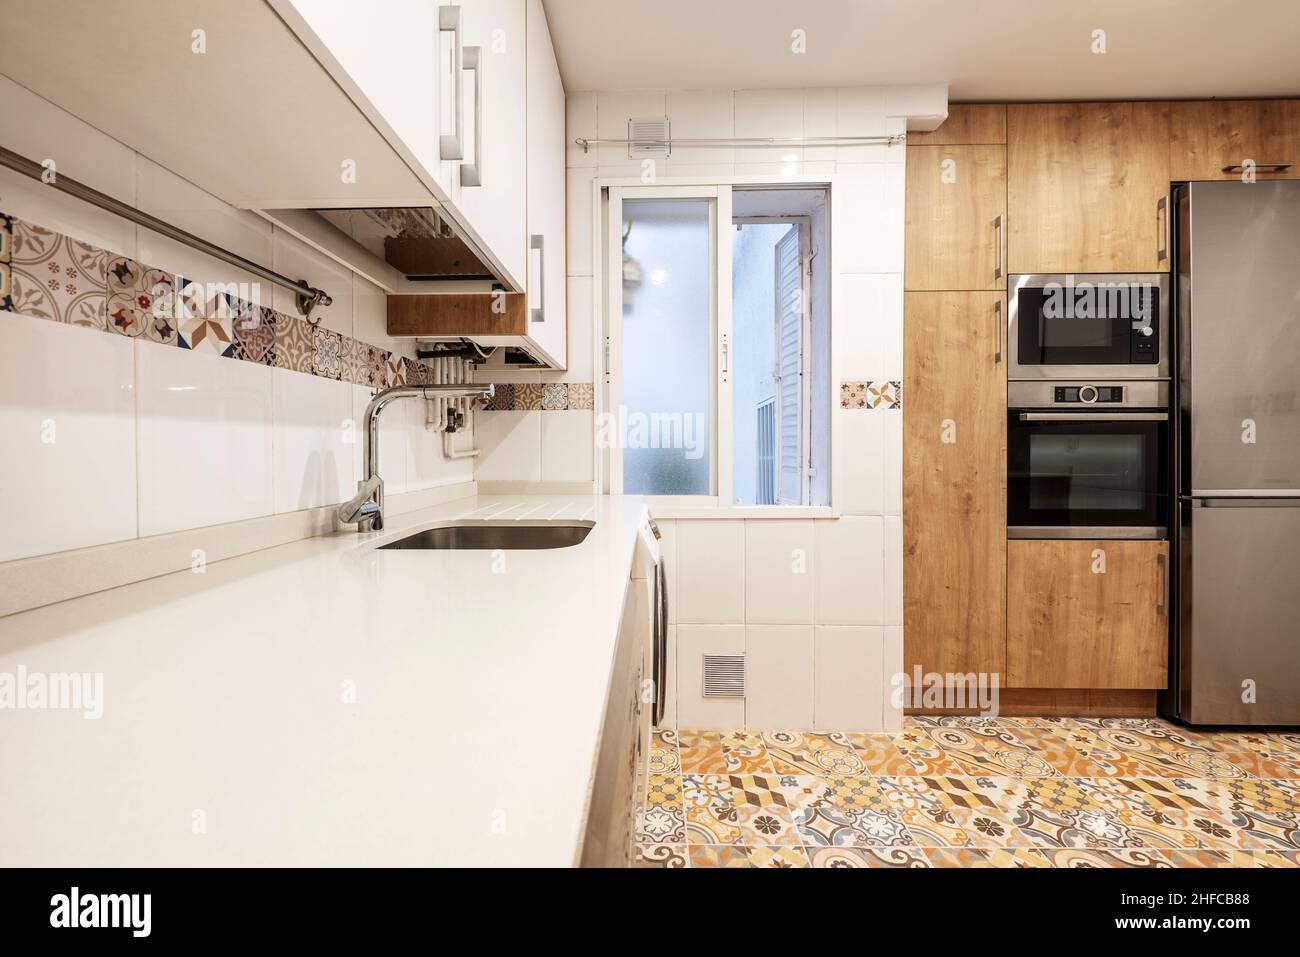 Cocina con muebles de madera combinados con muebles blancos que cubren las paredes desde el suelo hasta el techo y pisos hidráulicos de gres Foto de stock